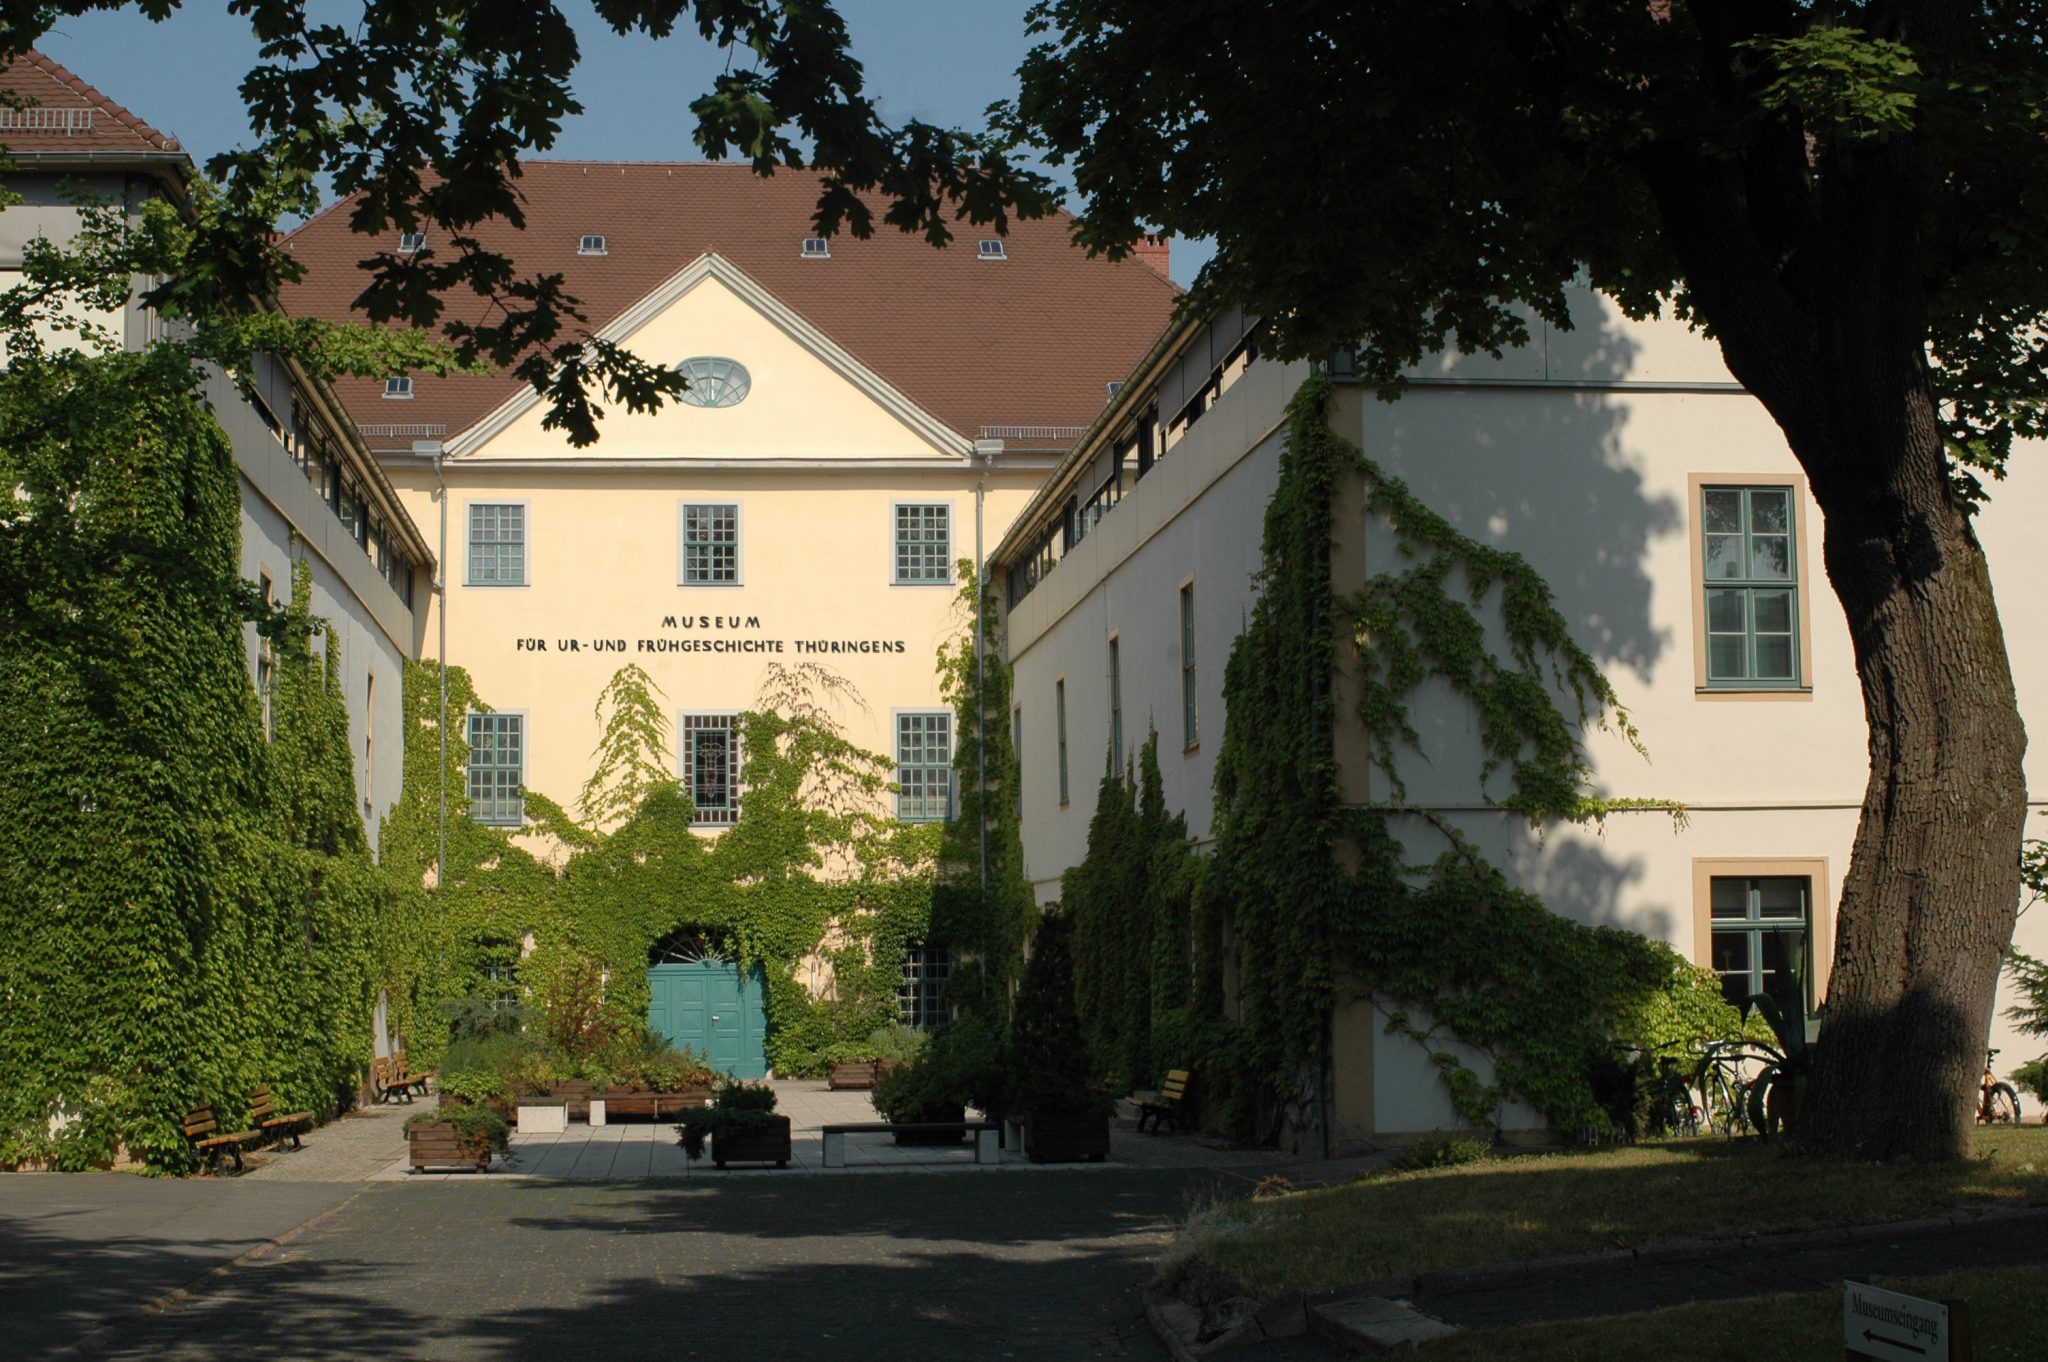 Blick in den Museumshof des dreiflügligen Gebäudes mit grün bewachsener Fassade